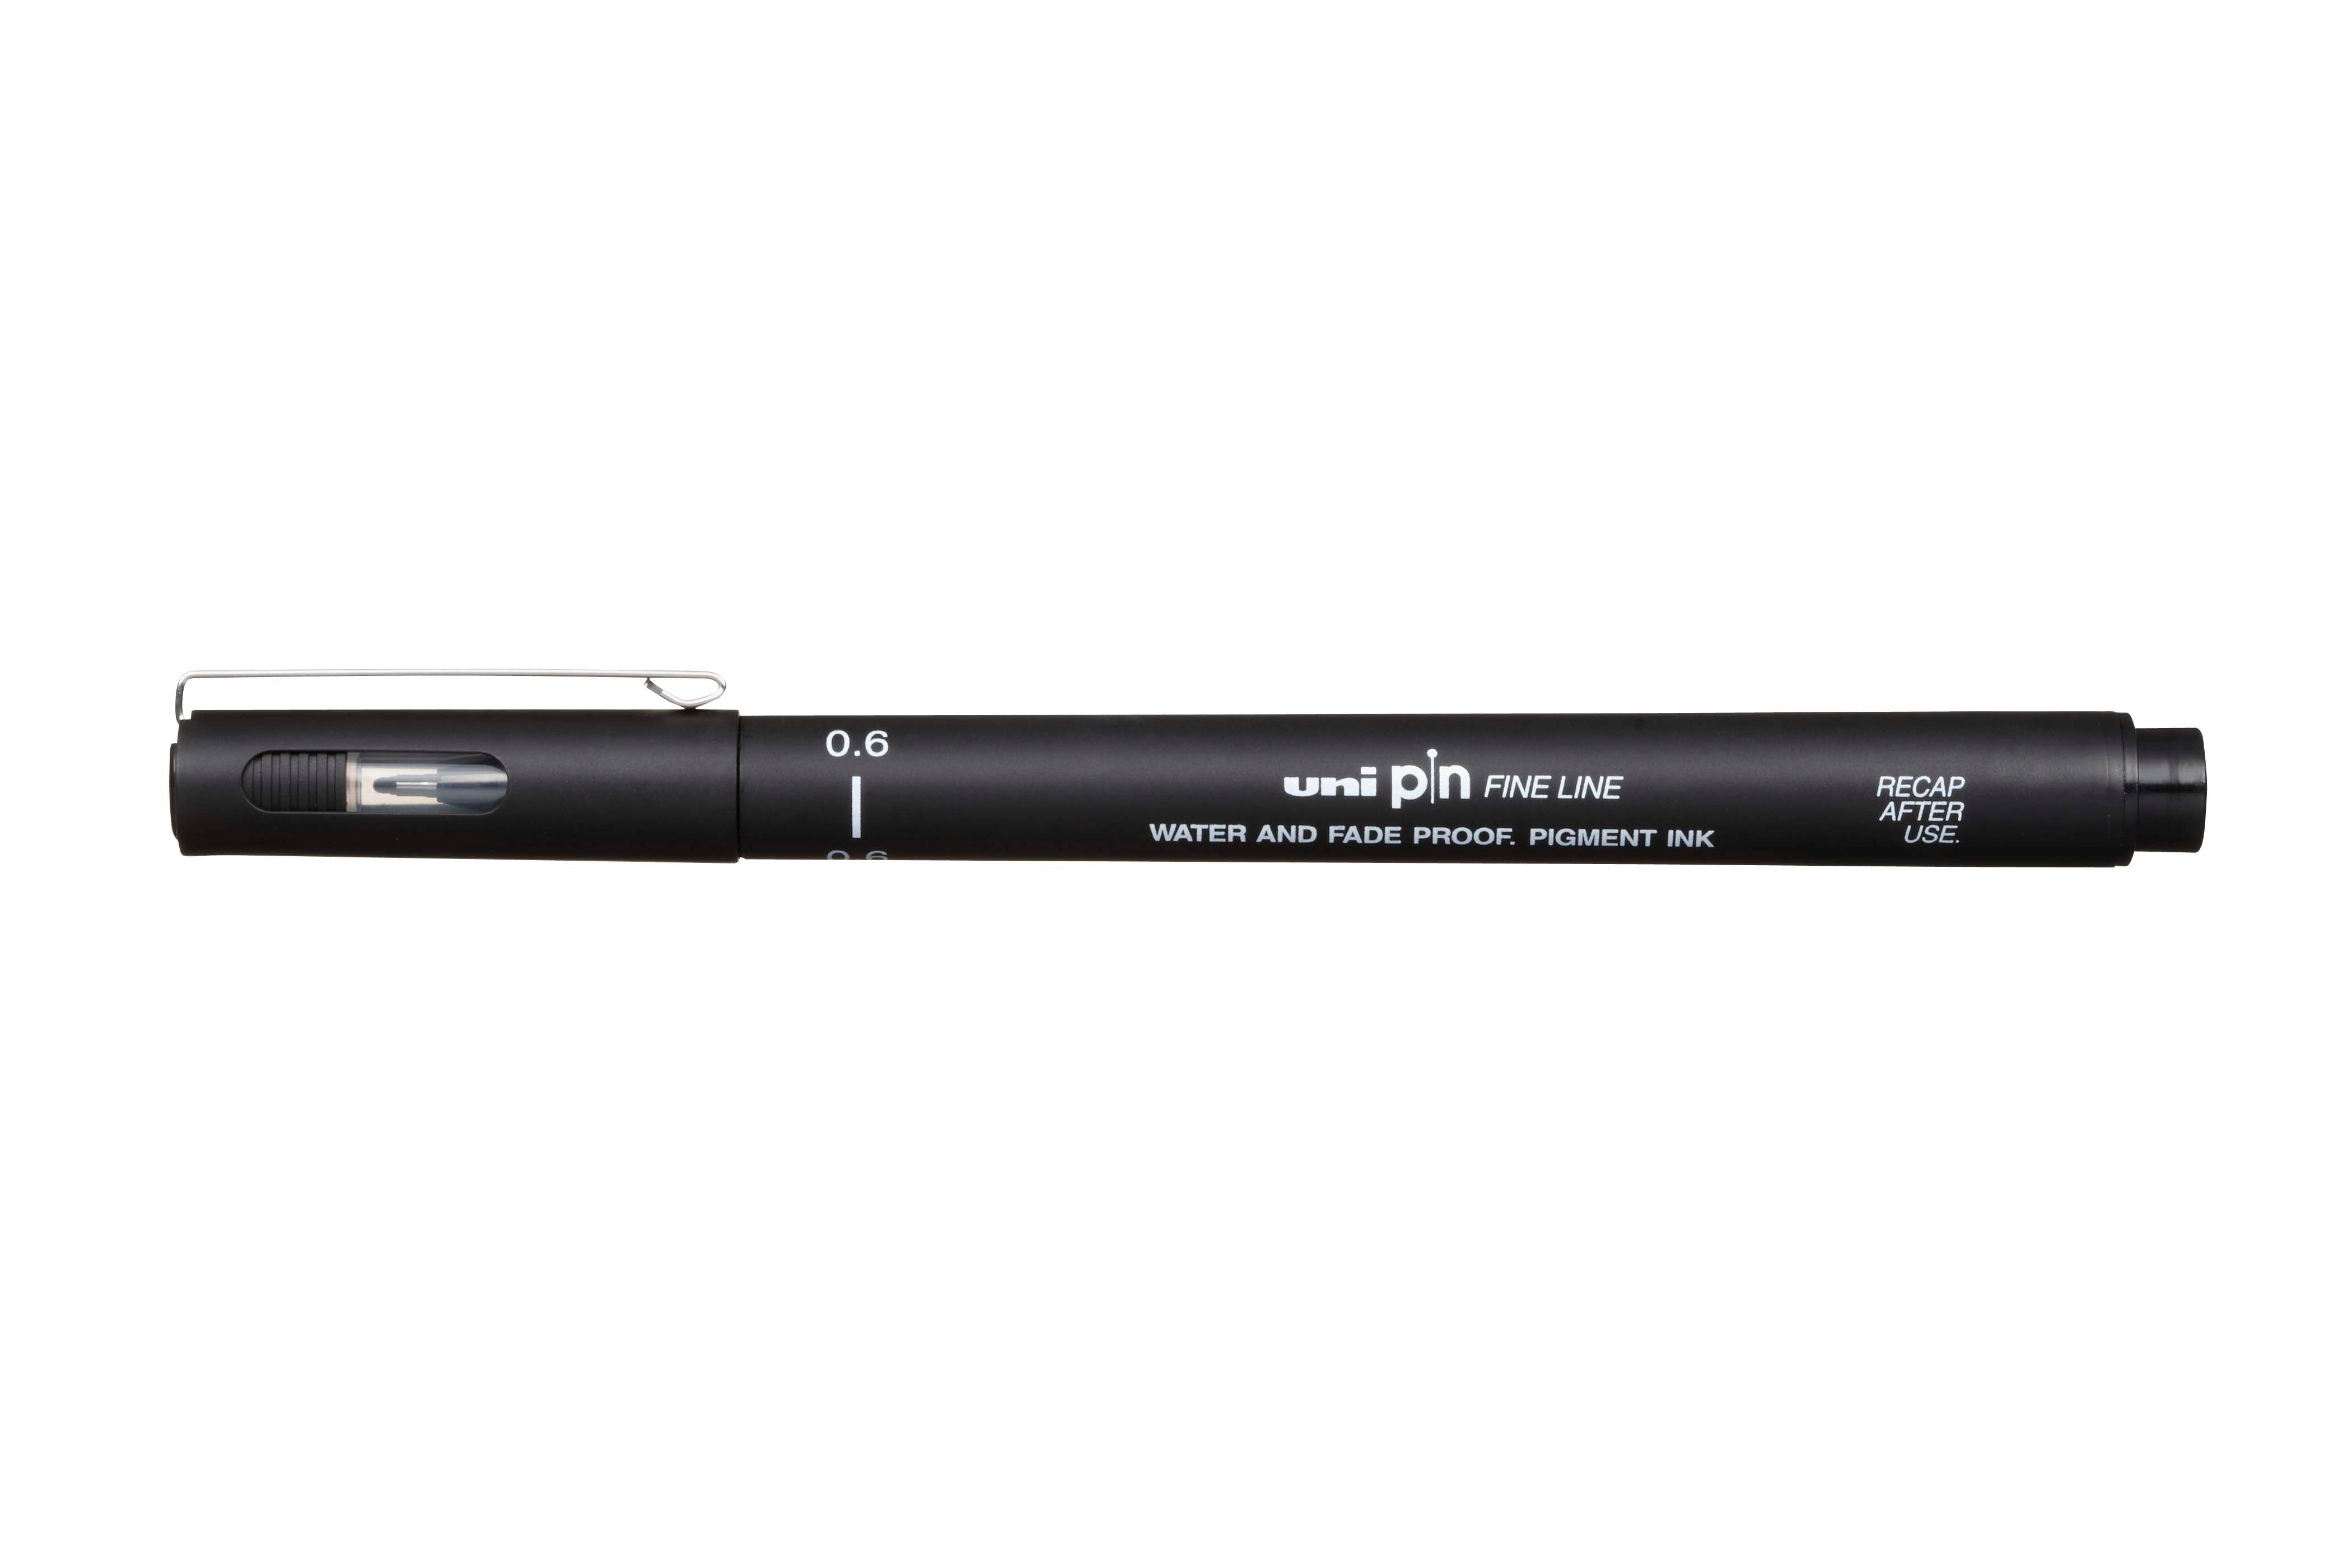 Uni pin waterproof fine liner black pen 07